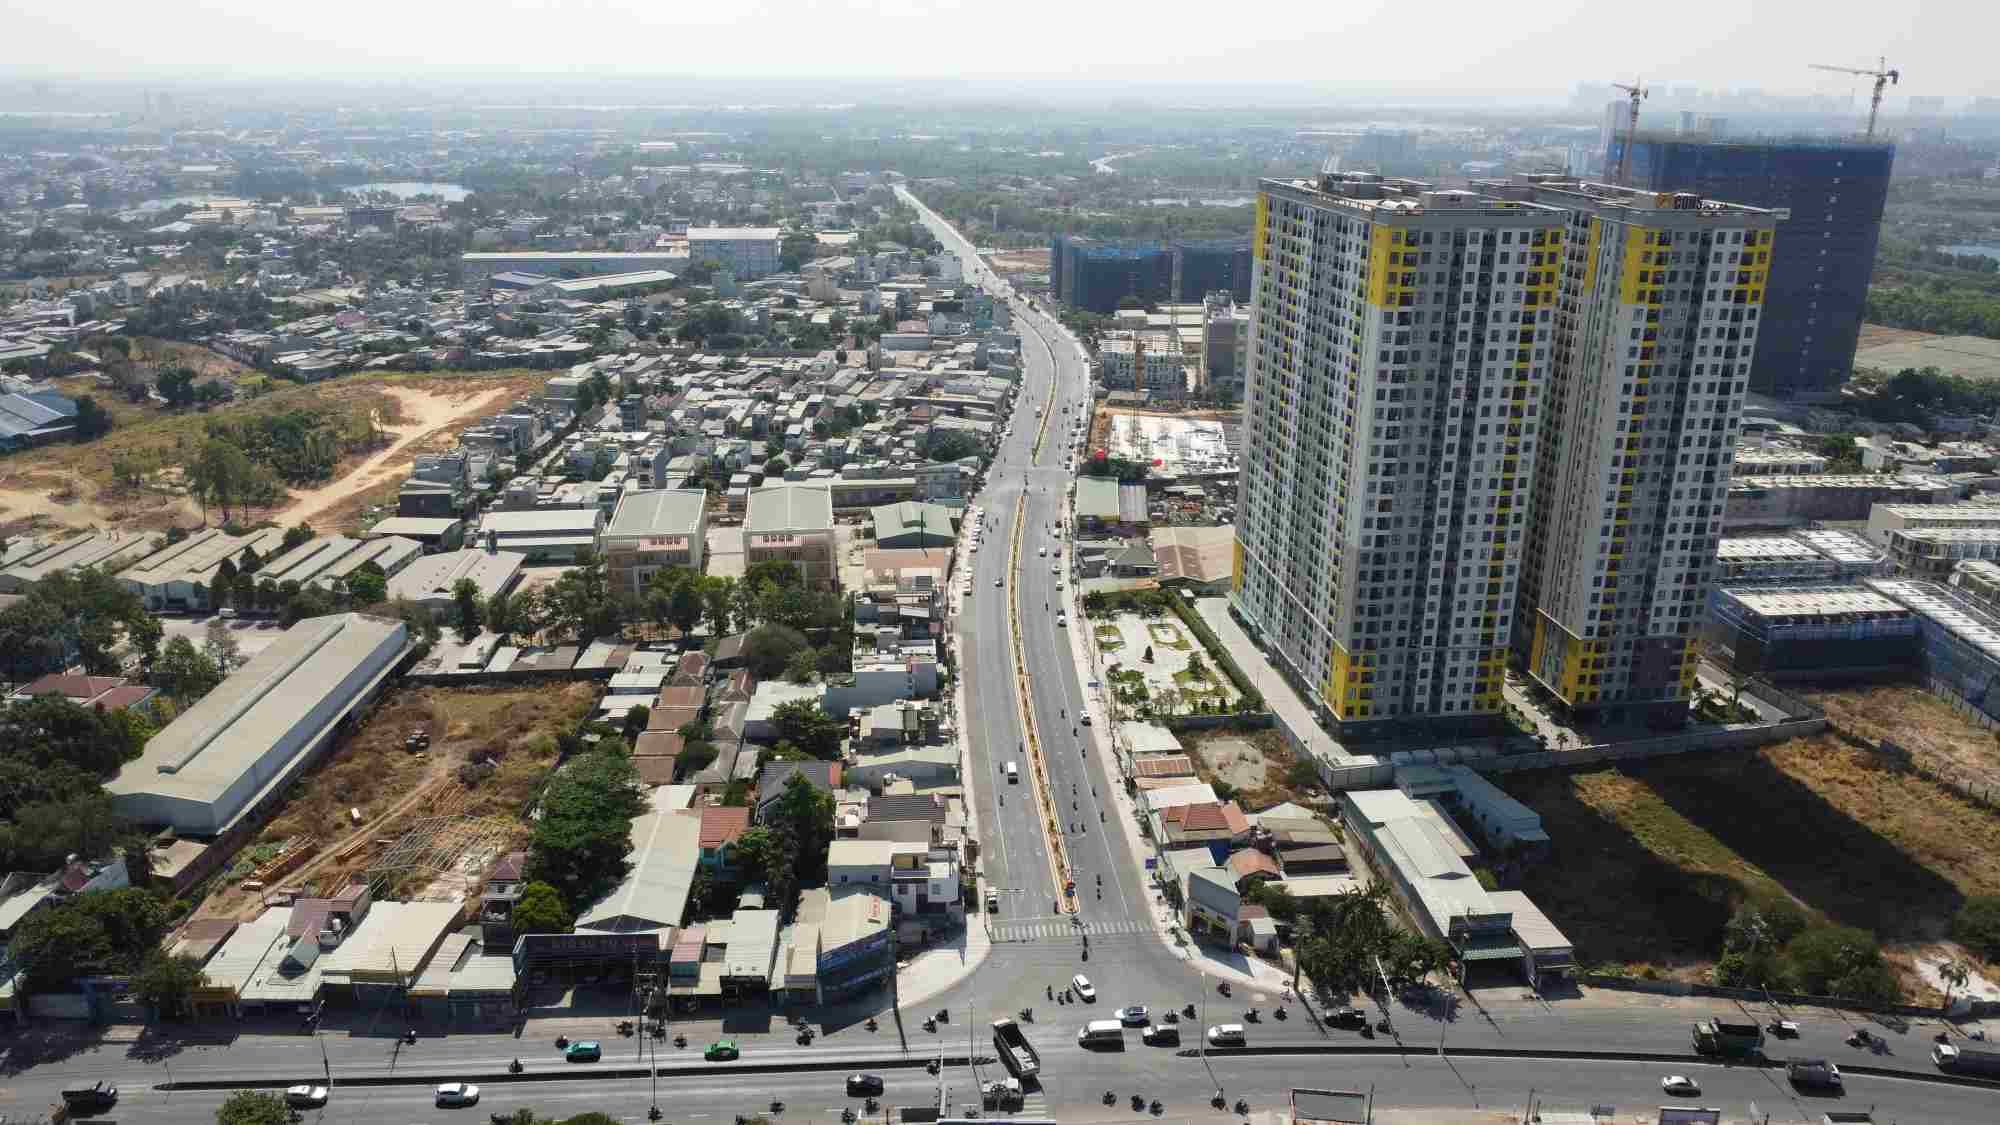 Đây là hình ảnh dự án đường trục chính Đông Tây tại phường Đông Hòa, thành phố Dĩ An, tỉnh Bình Dương. Trước đây là đường Thống Nhất hiện đang được mở rộng và kéo dài thêm để kết nối với Bến xe Miền Đông mới.